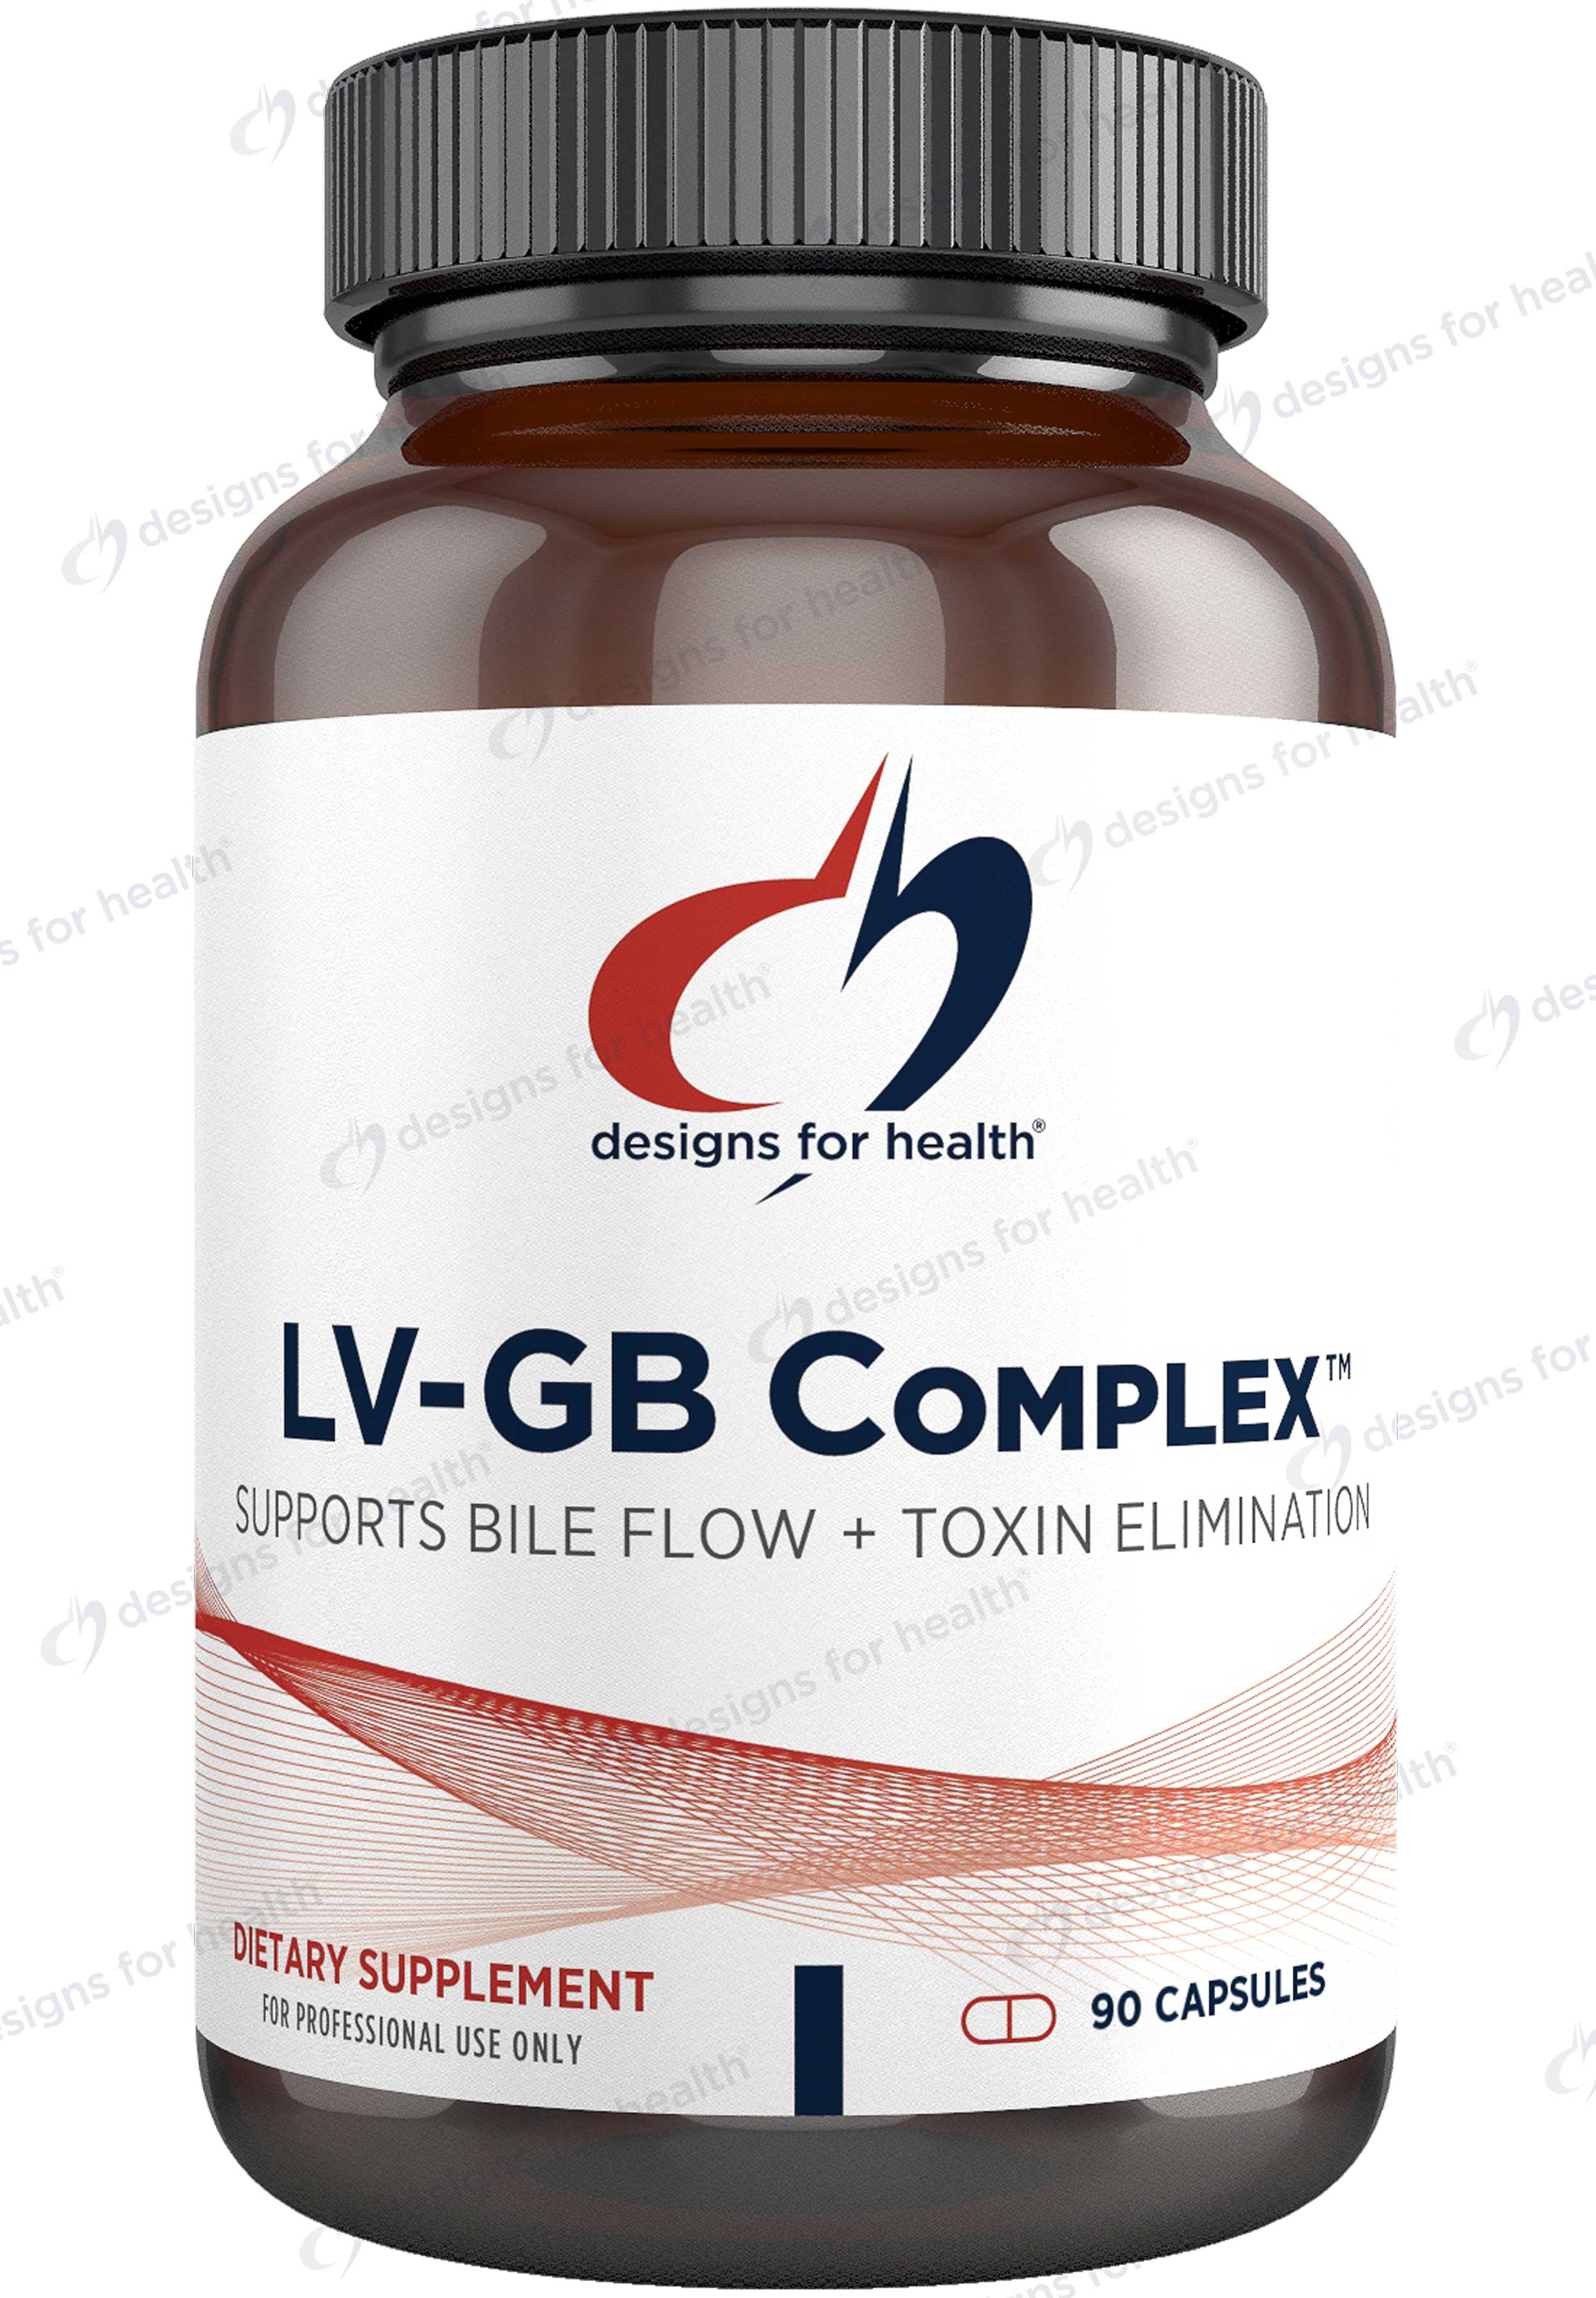 Designs for Health LV-GB Complex